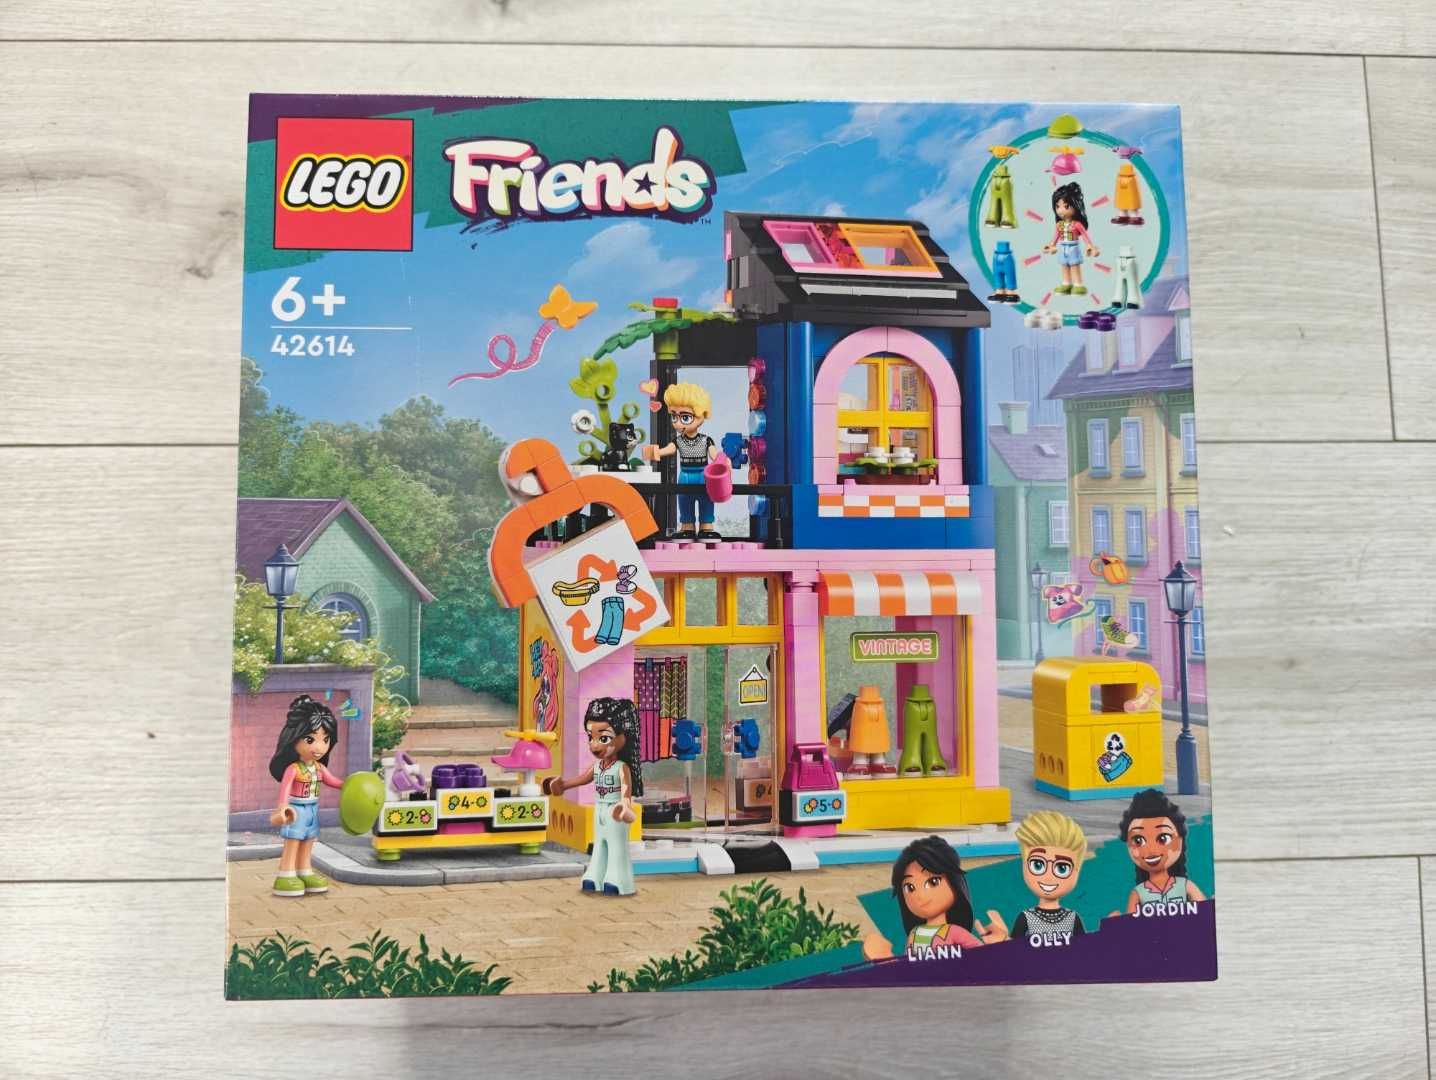 Fabrycznie NOWE LEGO Friends 42614 Sklep z odzieżą używaną, retro